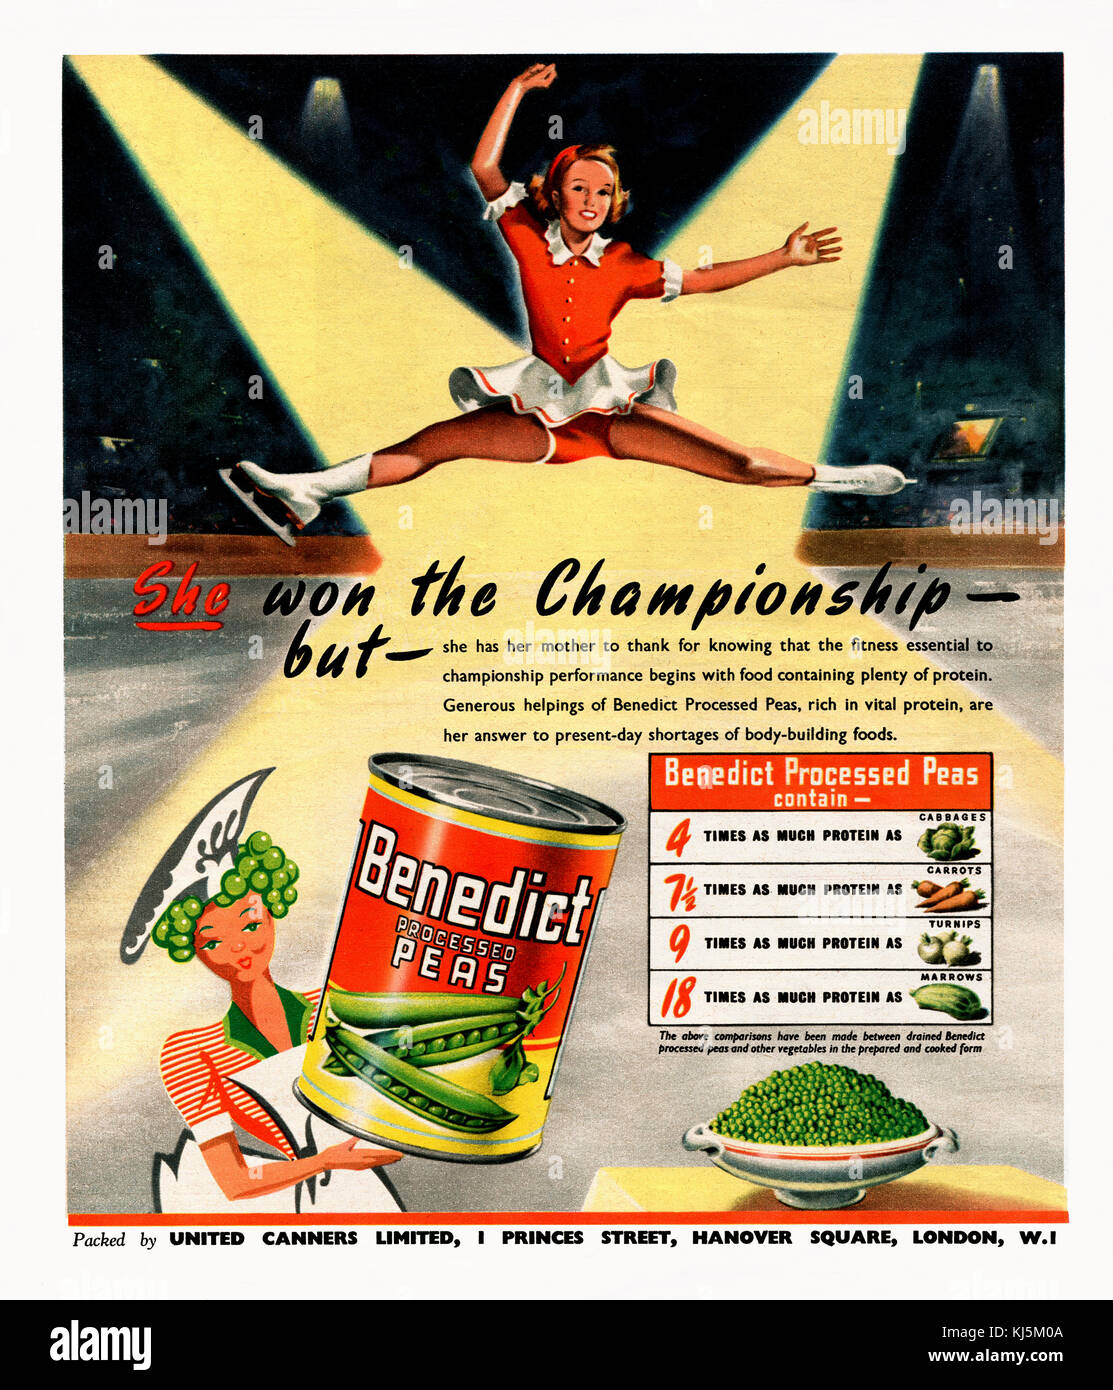 Pubblicità della rivista 1947 per Benedict Processed Peas. I piselli sono stati prodotti dalla United Canners di Londra. L'annuncio presenta un'illustrazione di un pattinatore di ghiaccio e promuove il contenuto proteico dei piselli Foto Stock